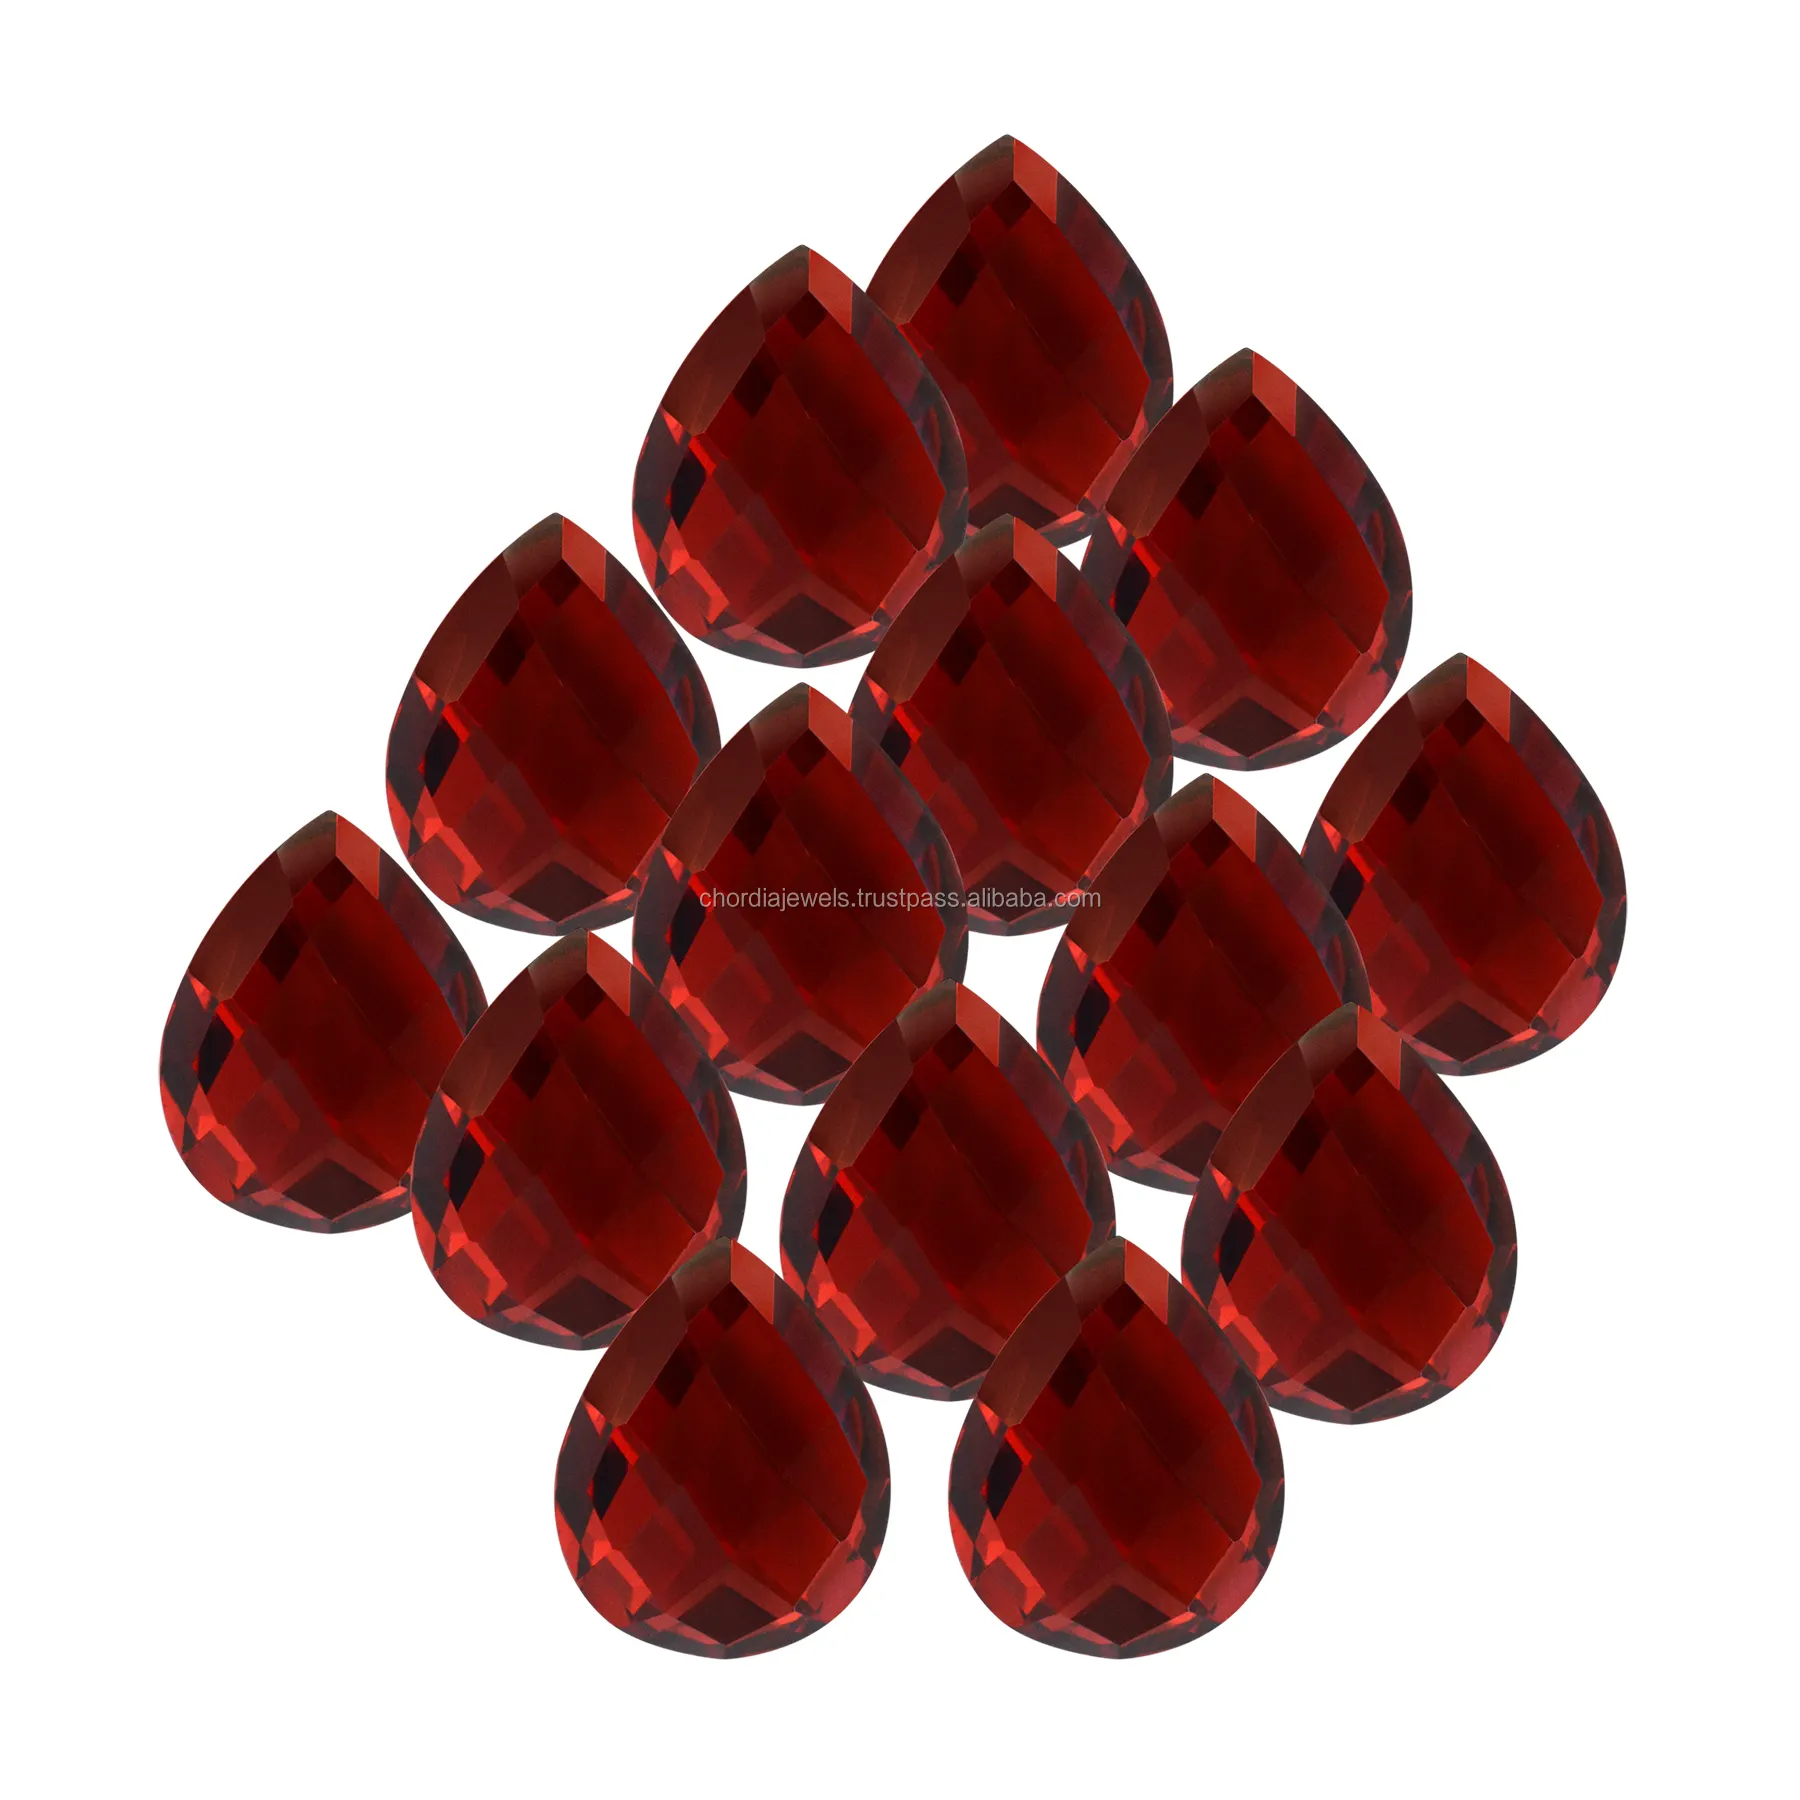 थोक मूल्य लाल ढीला रत्न 7x5mm - 14x10mm के लिए निचले स्तर के प्राकृतिक गार्नेट पत्थर गहने बनाने थोक मूल्य